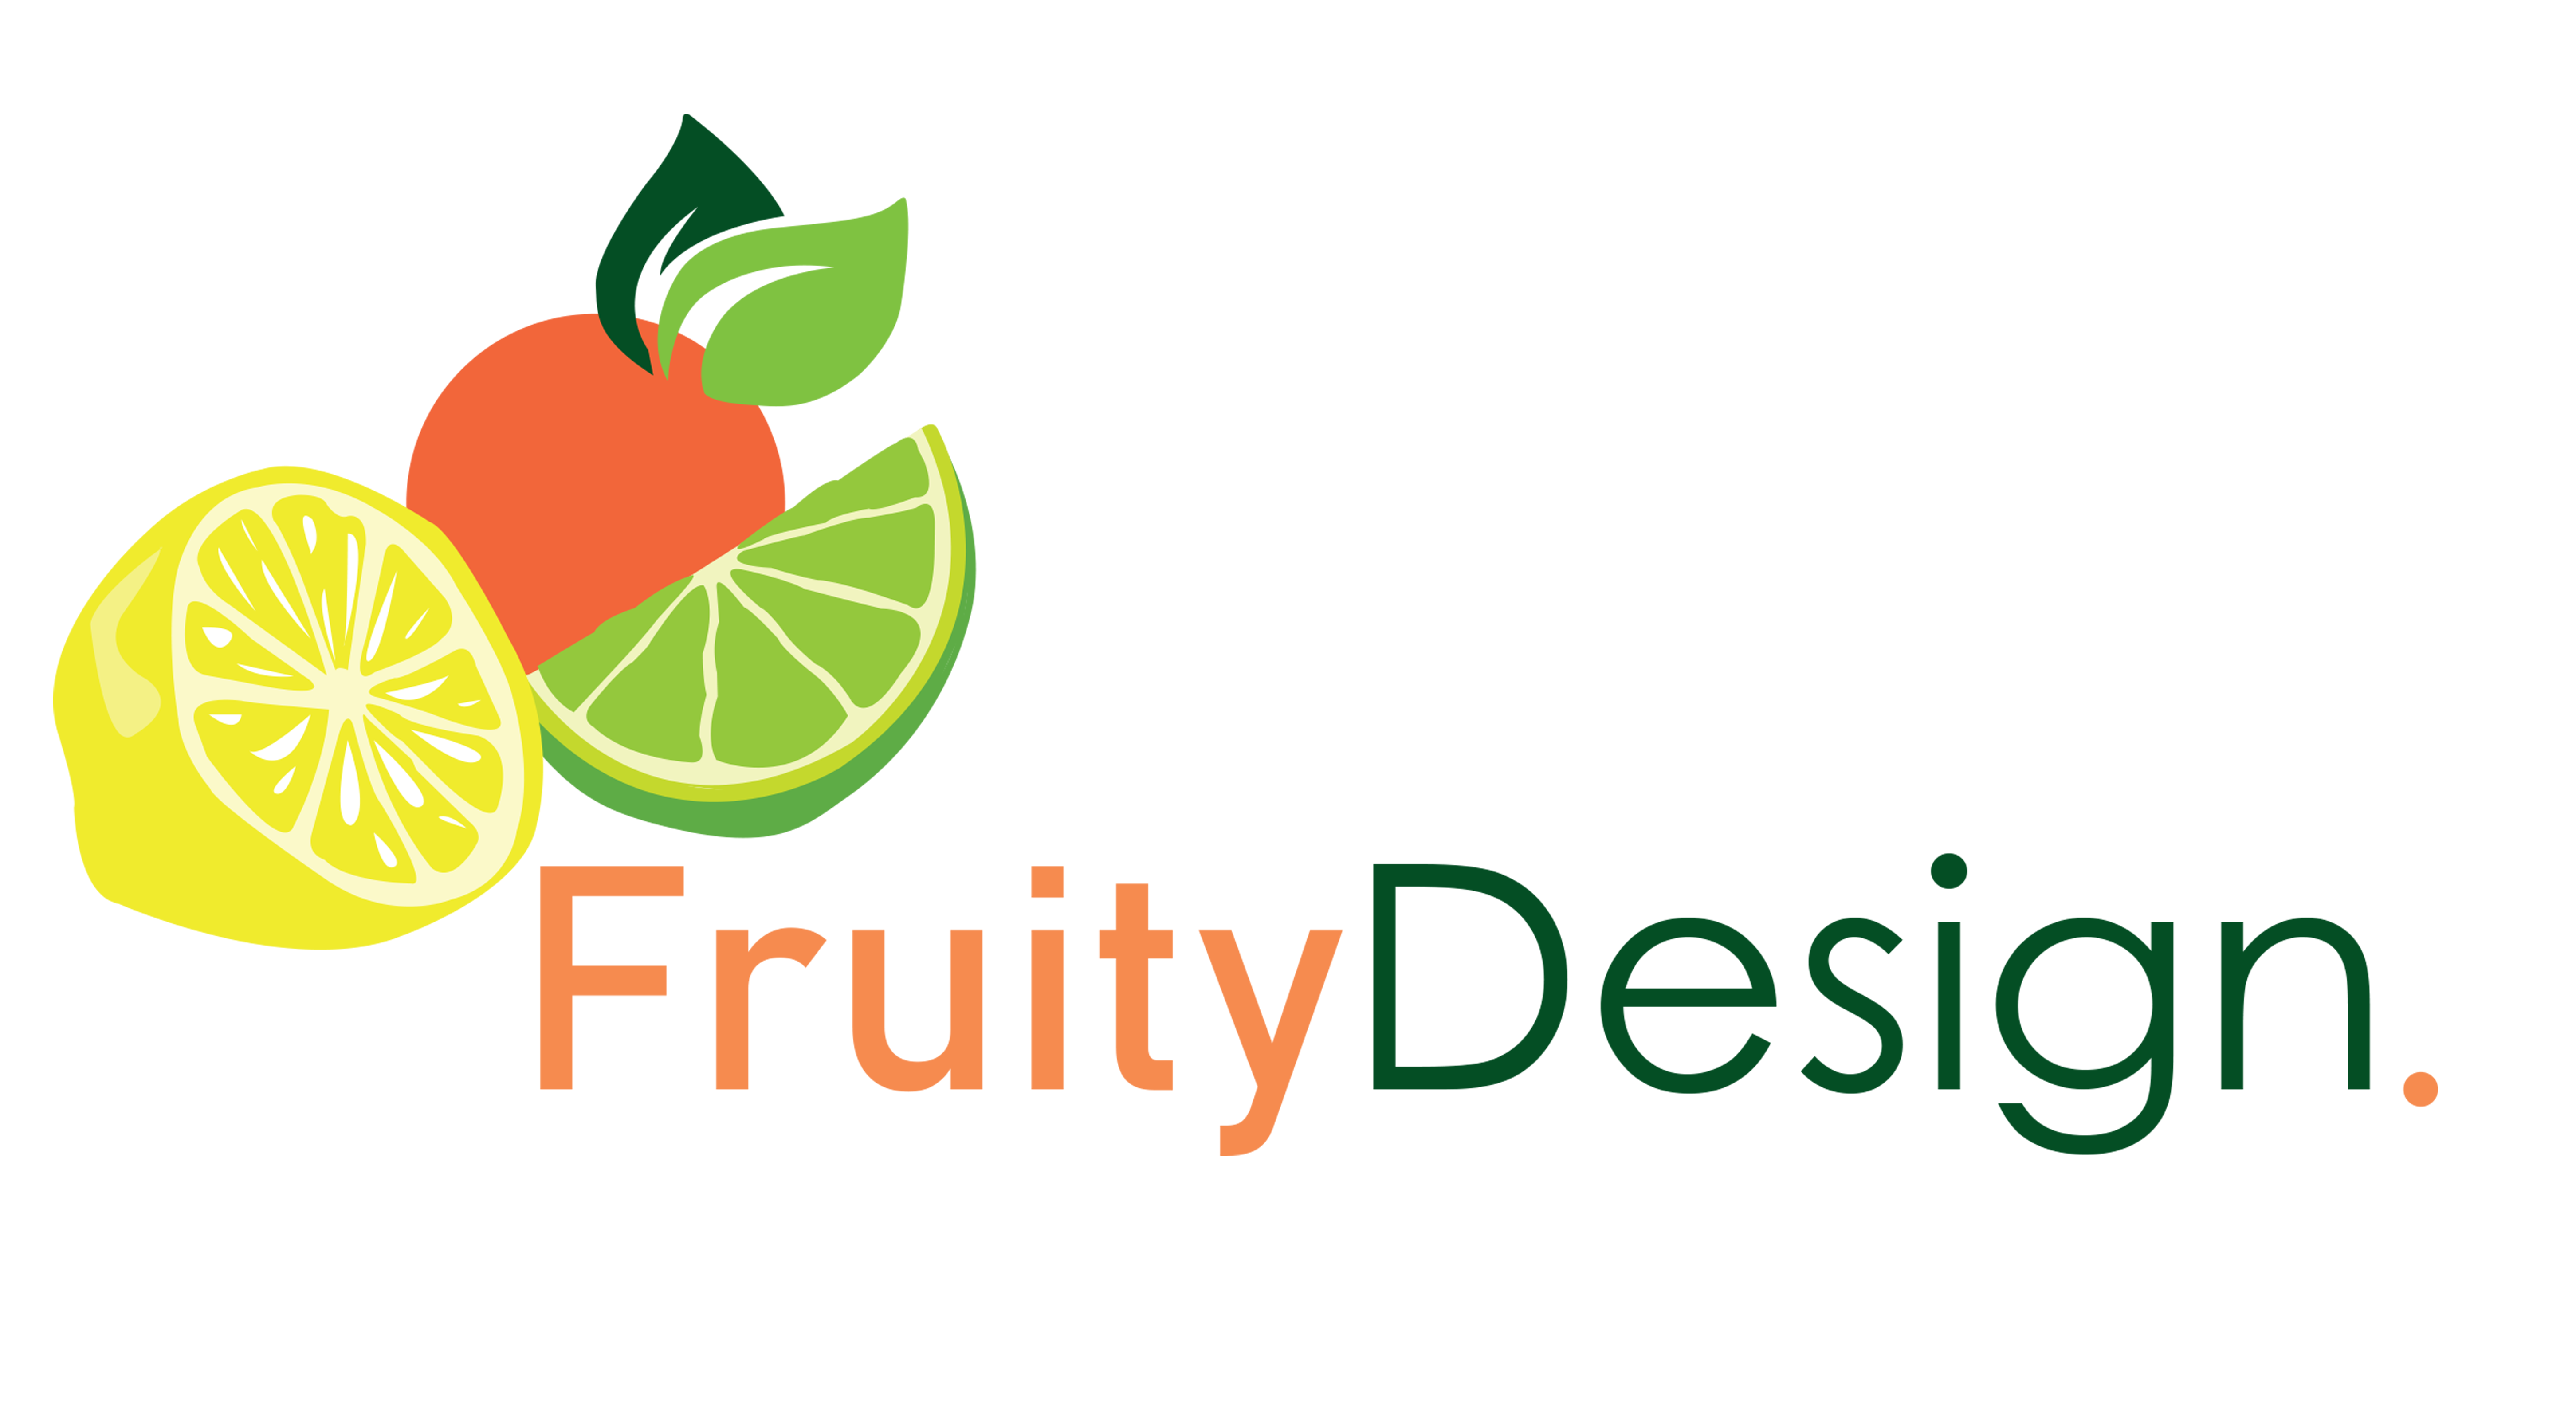 Fruity Design